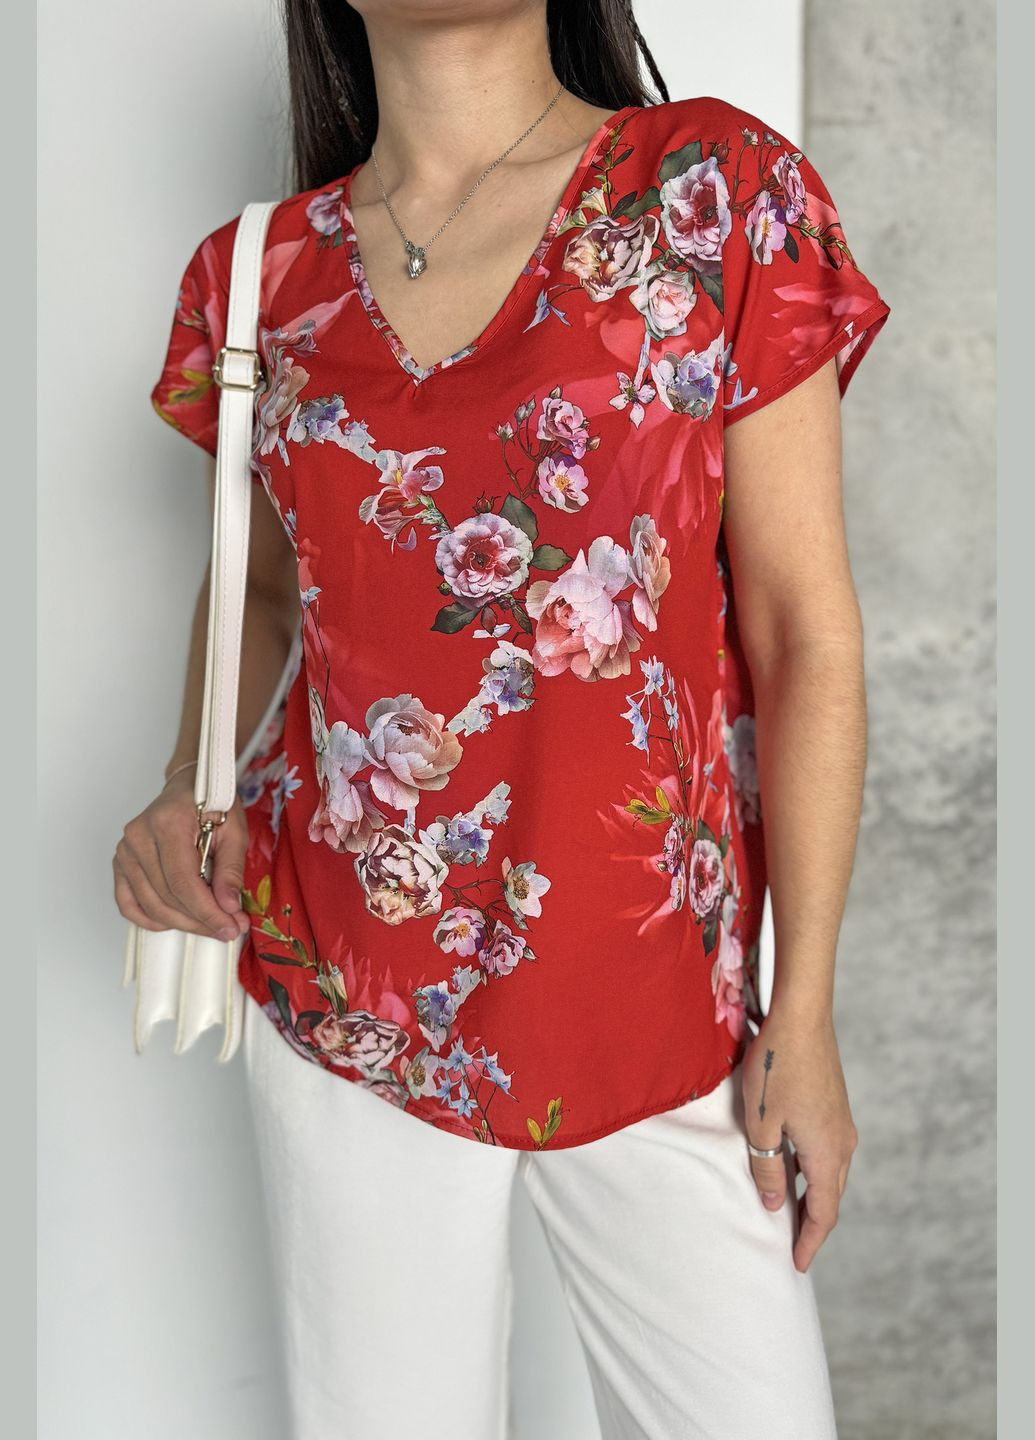 Красная летняя легкая яркая стильная блузка в цветочный принт INNOE Блуза